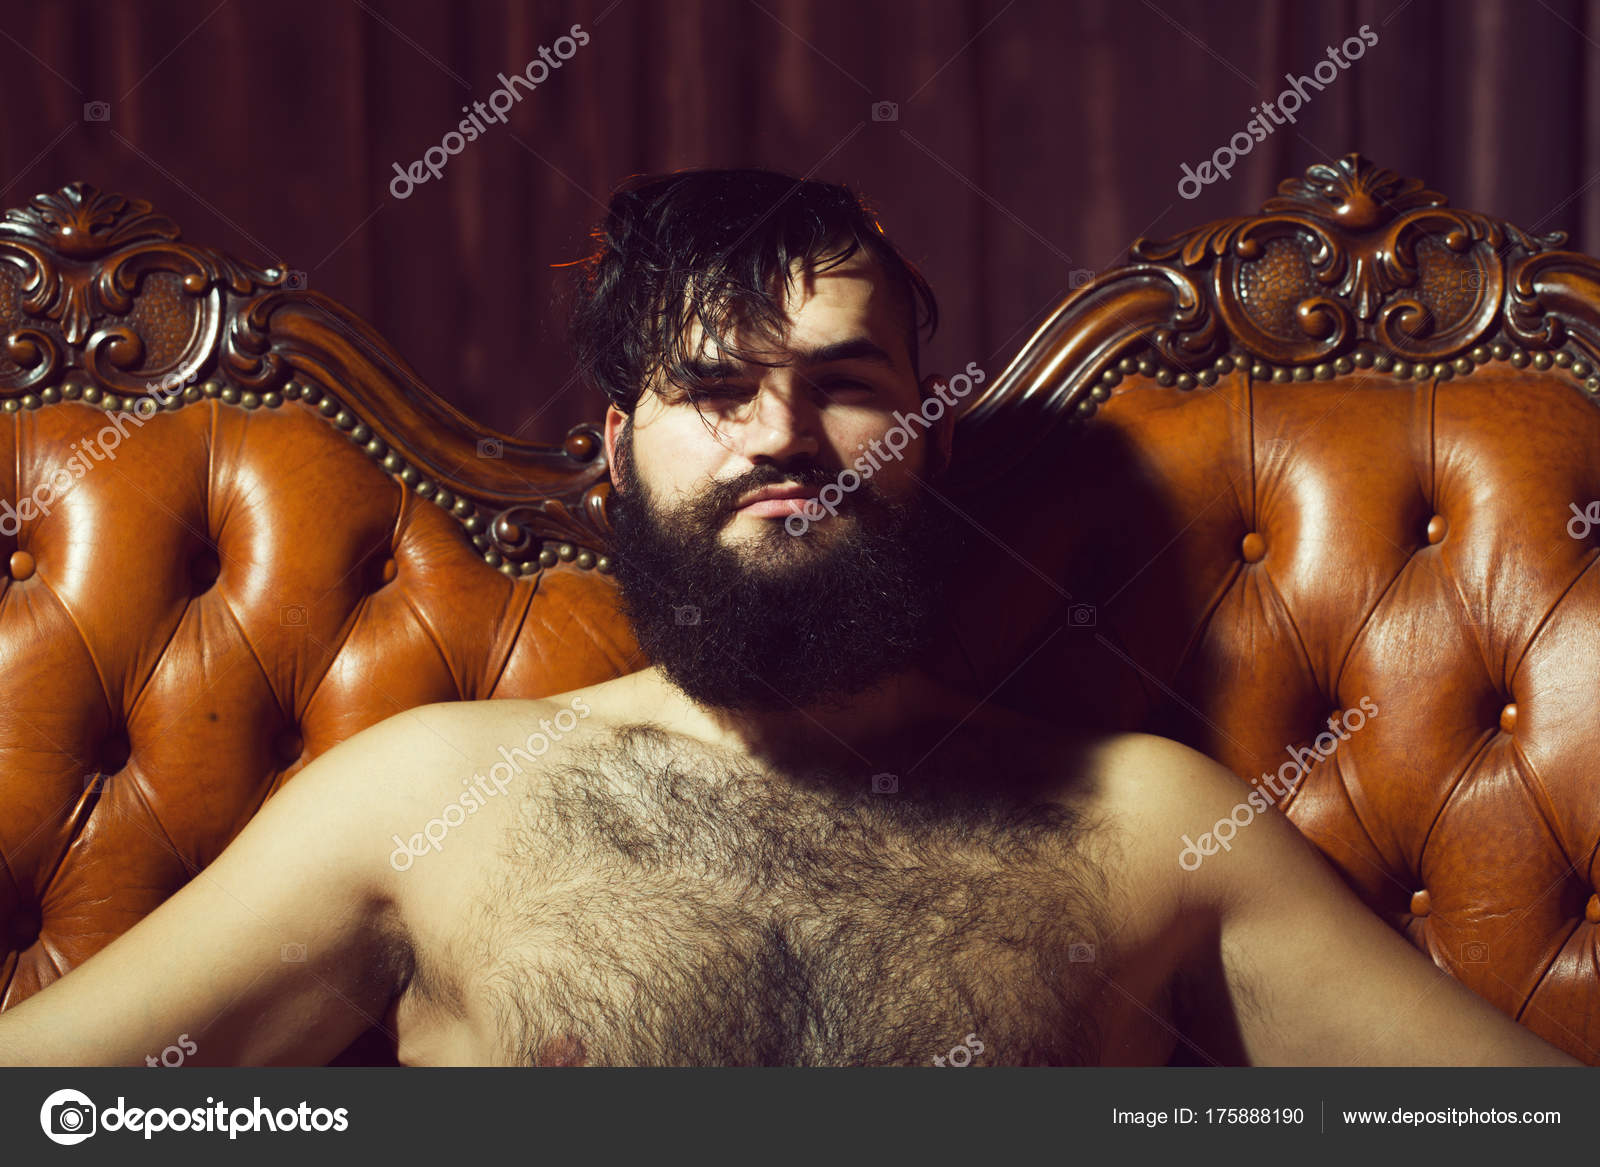 Naked Beared Men